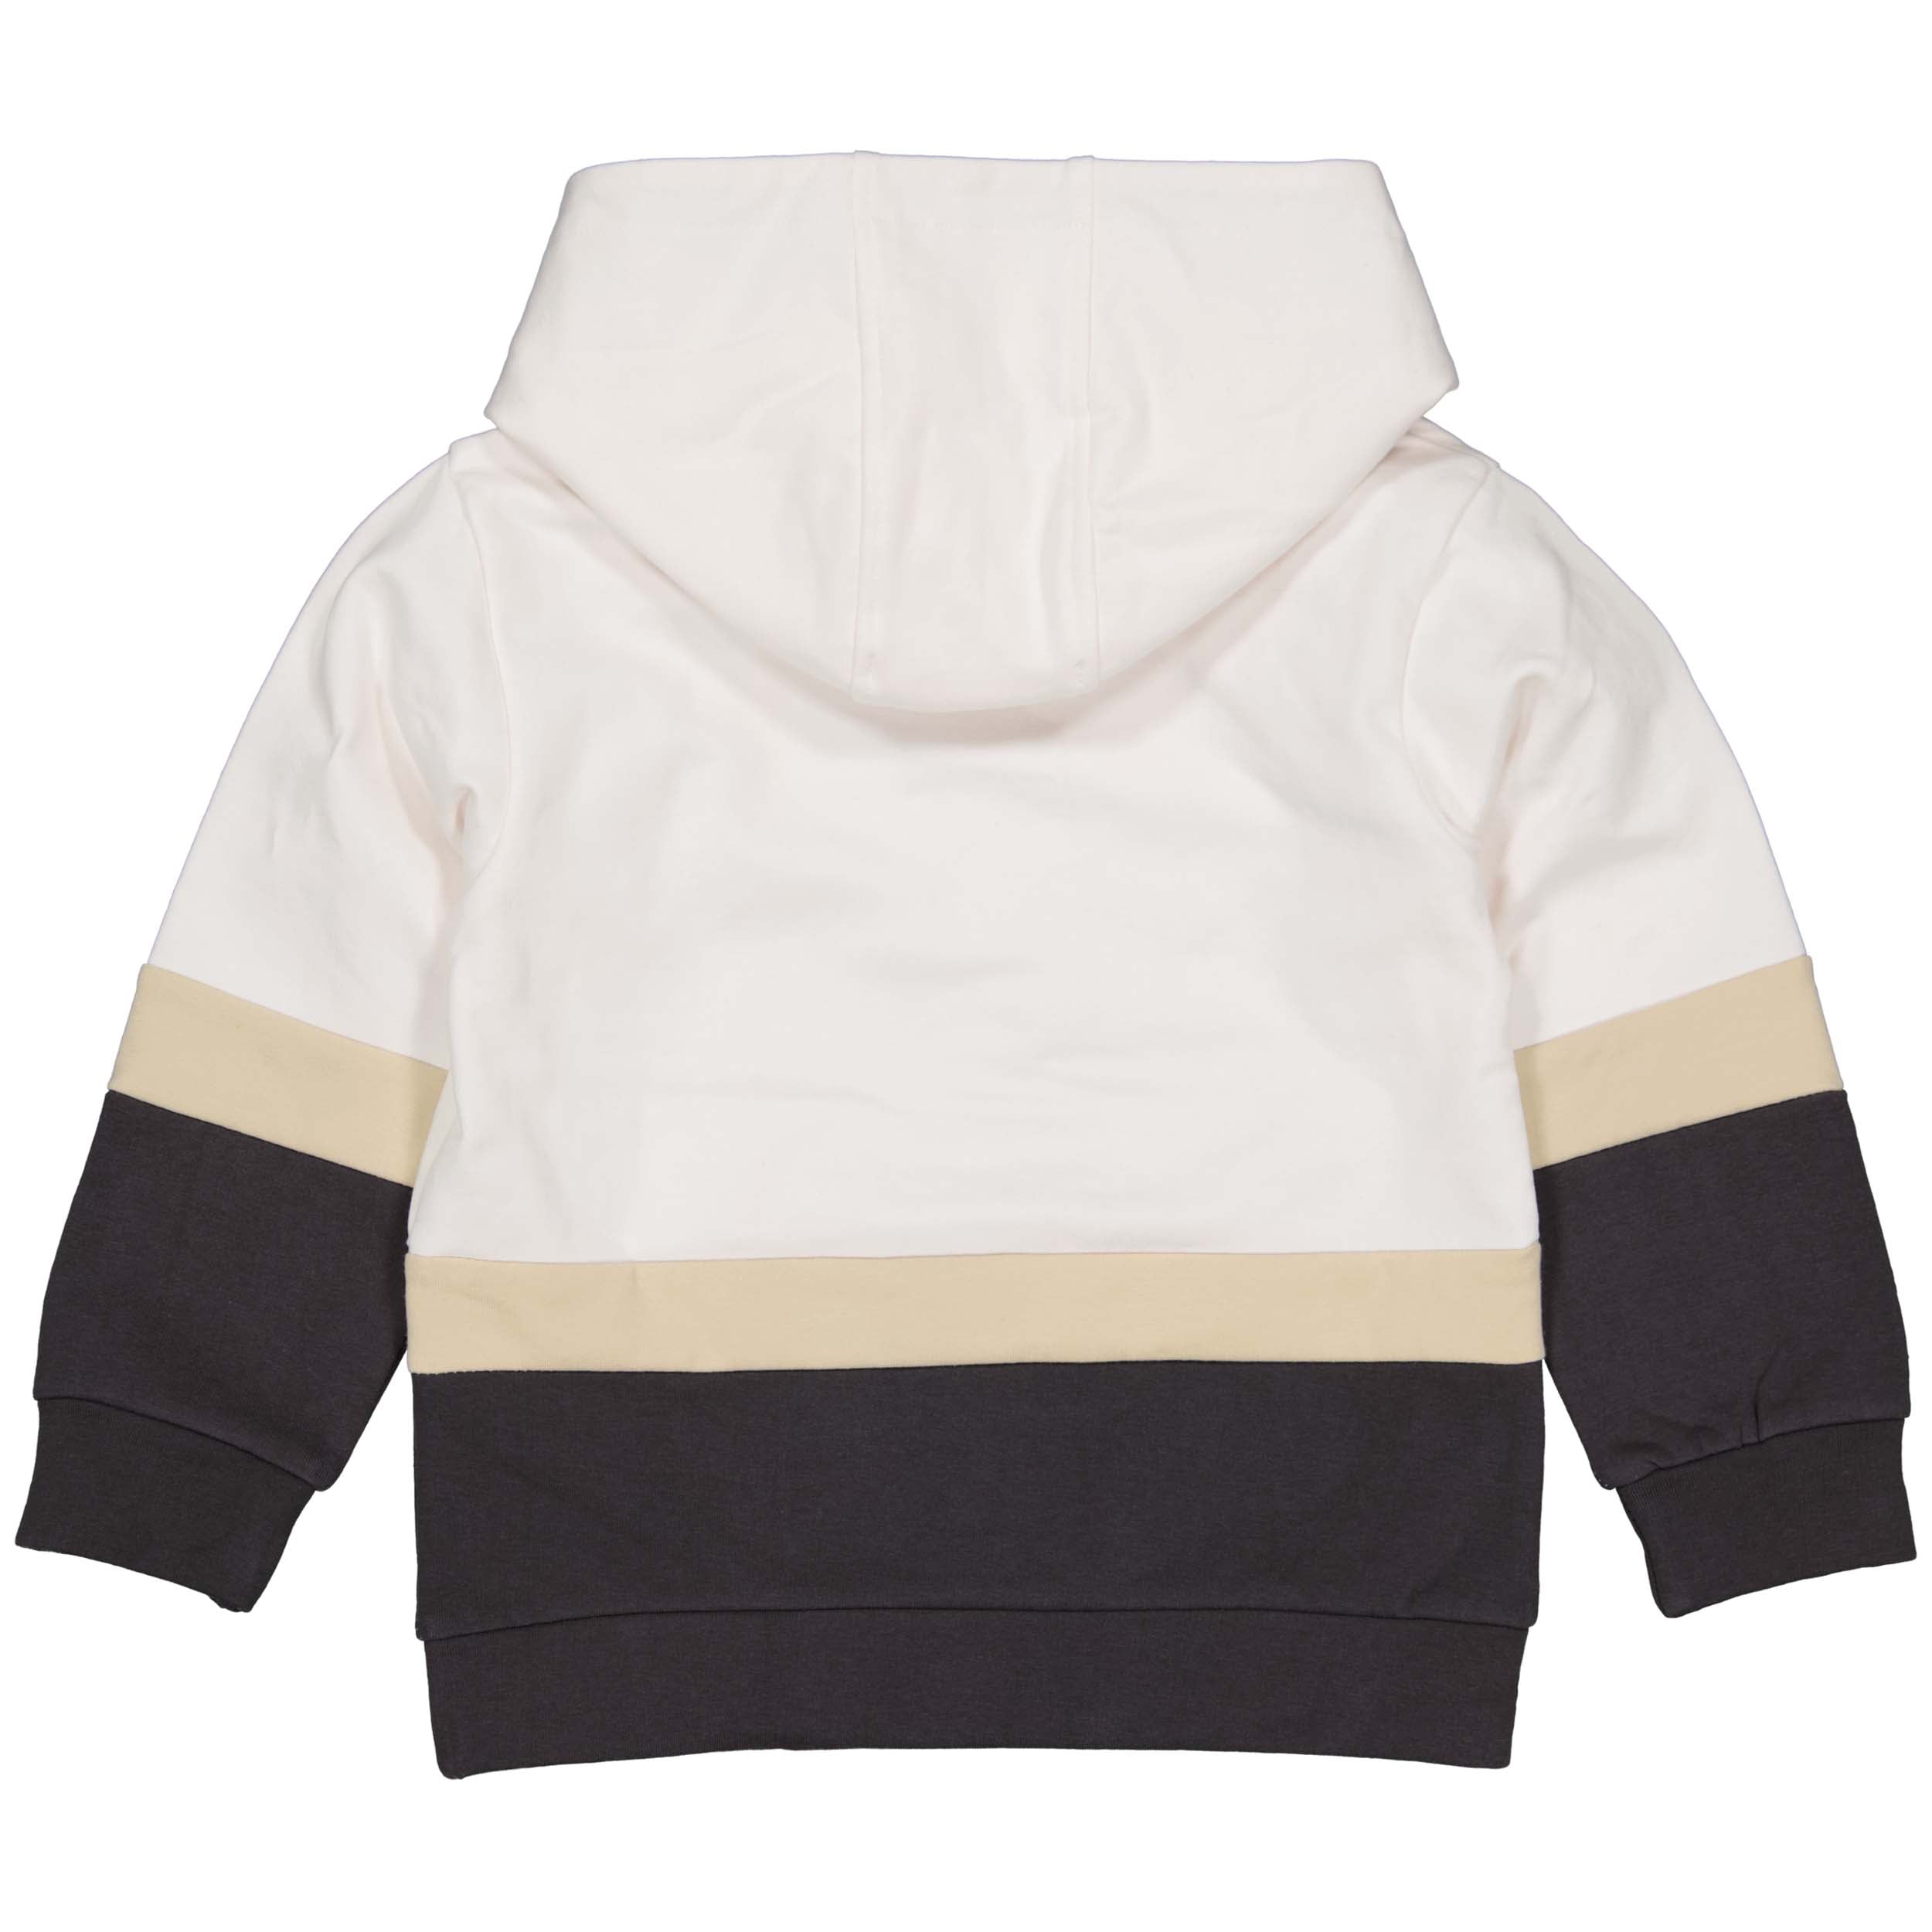 Jongens Sweater GIGOLW231 van Little Levv in de kleur Off White in maat 128.